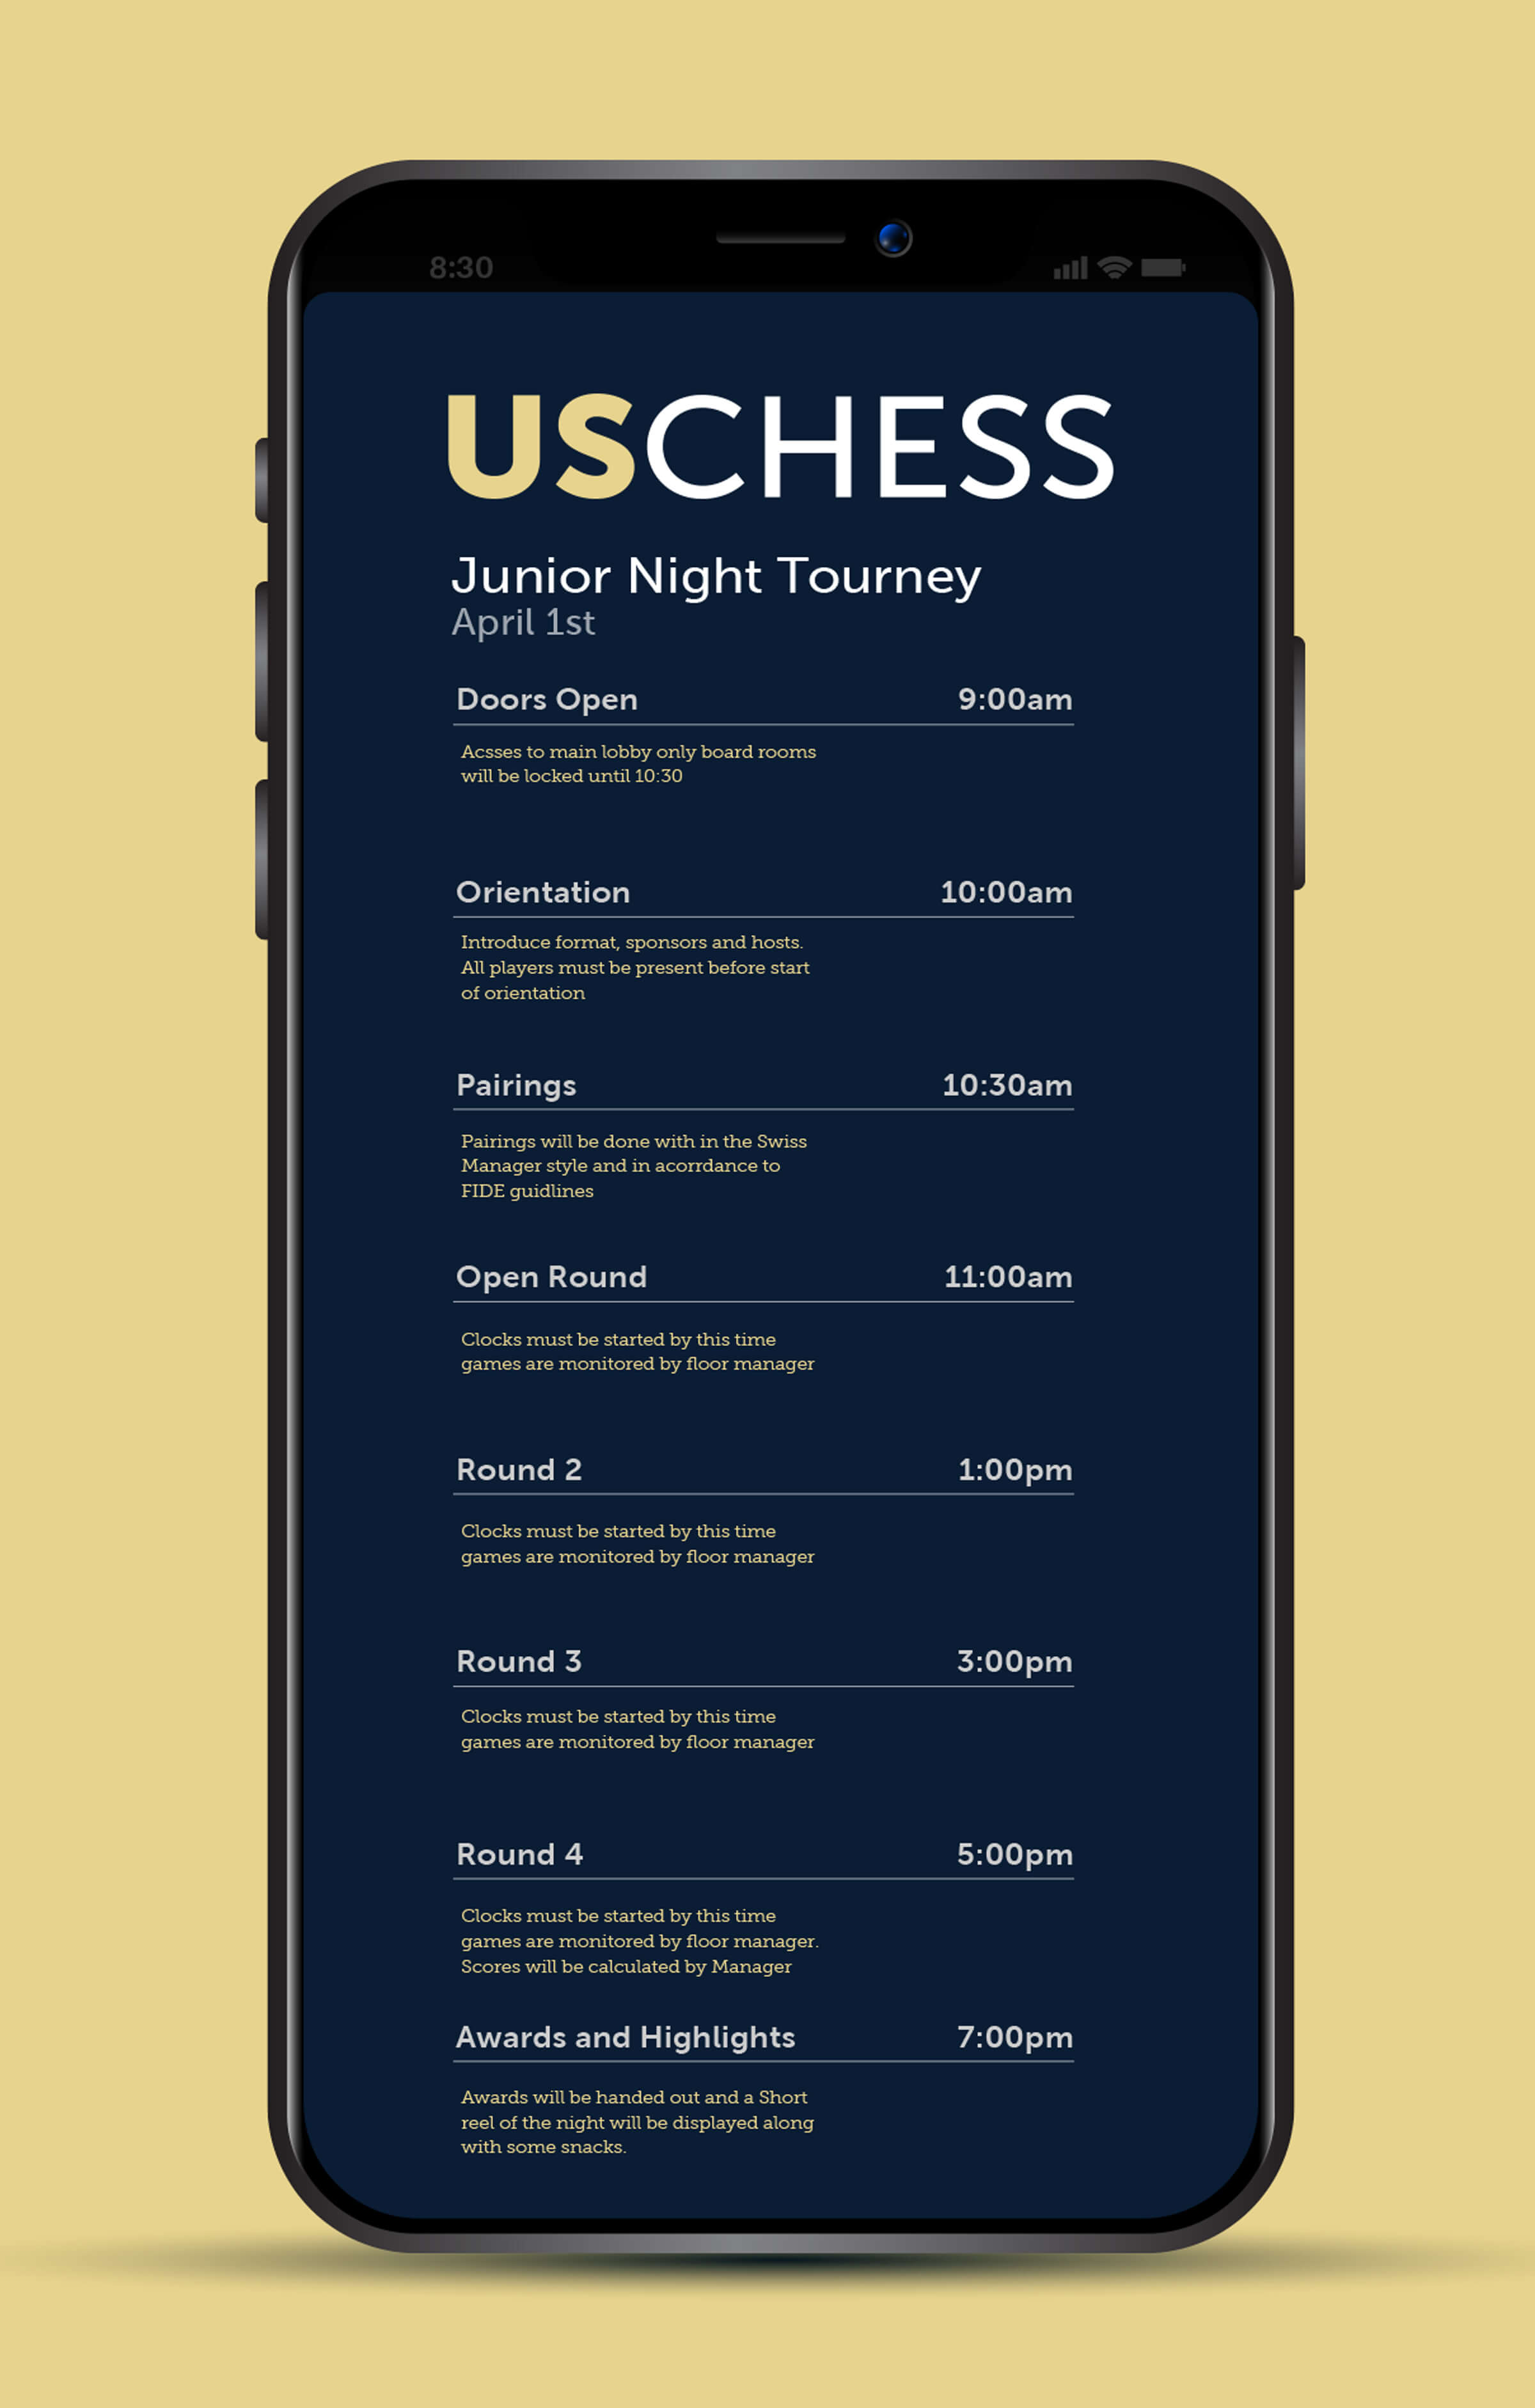 USCHESS schedule